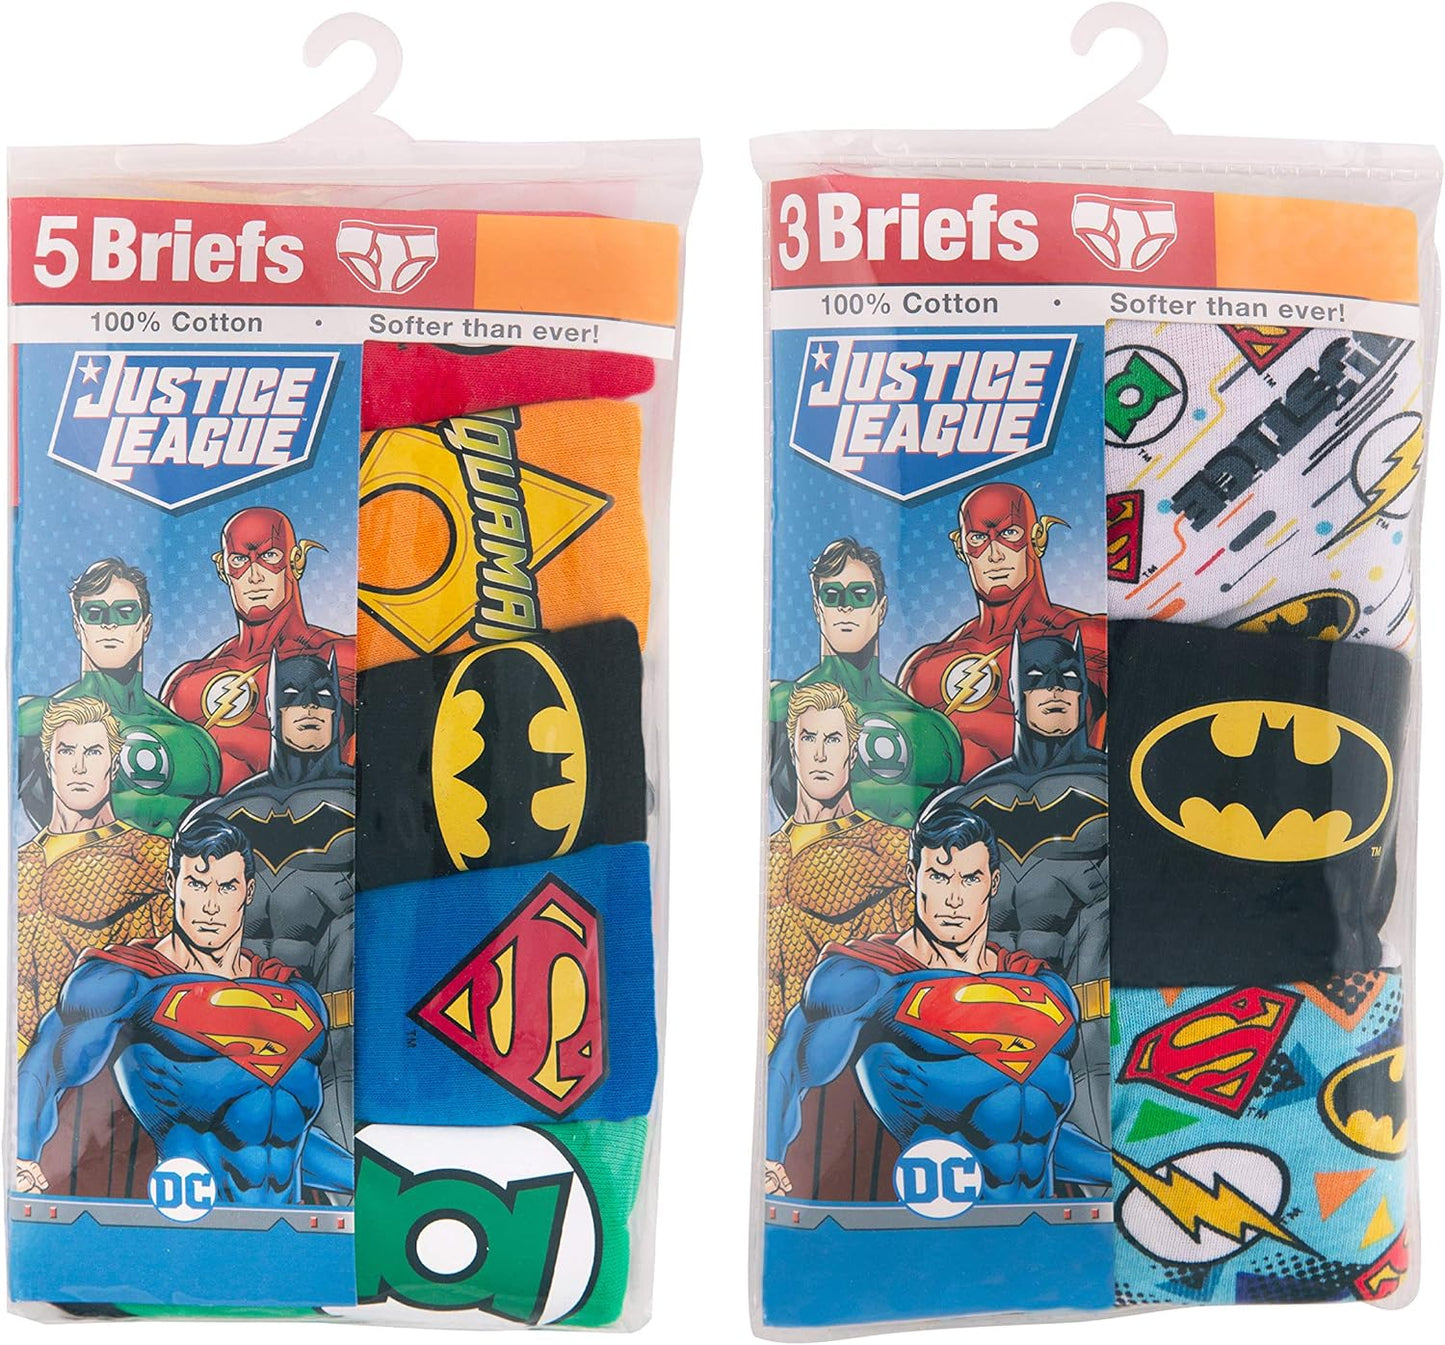 DC Comics Boys' 100% Cotton Briefs with Prints Including Superman, Batman, The Flash Logos, Sizes 2/3t, 4t, 4, 6, 8